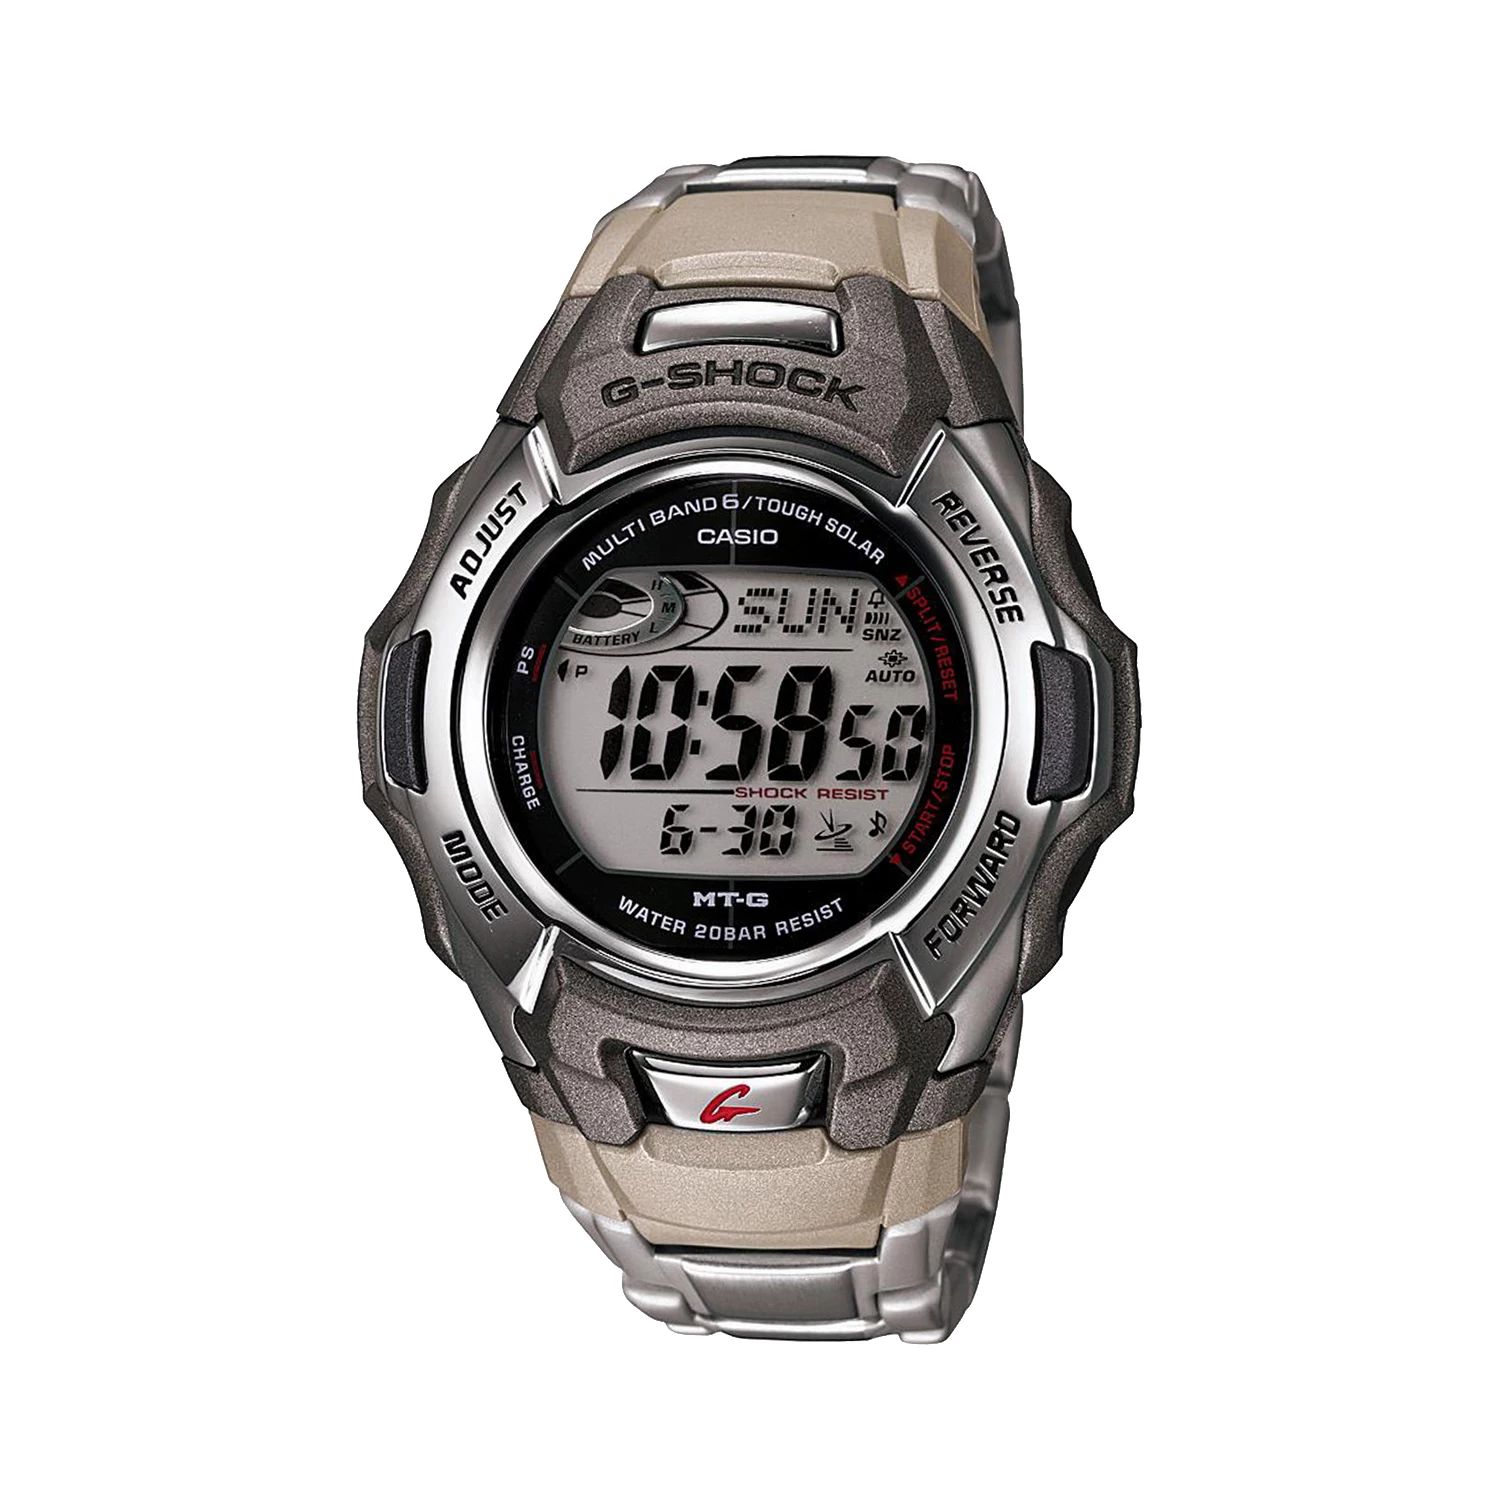 Мужские часы Casio G-Shock Tough Solar Atomic с цифровым хронографом из нержавеющей стали — MTGM900DA-8 Relic by Fossil цена и фото